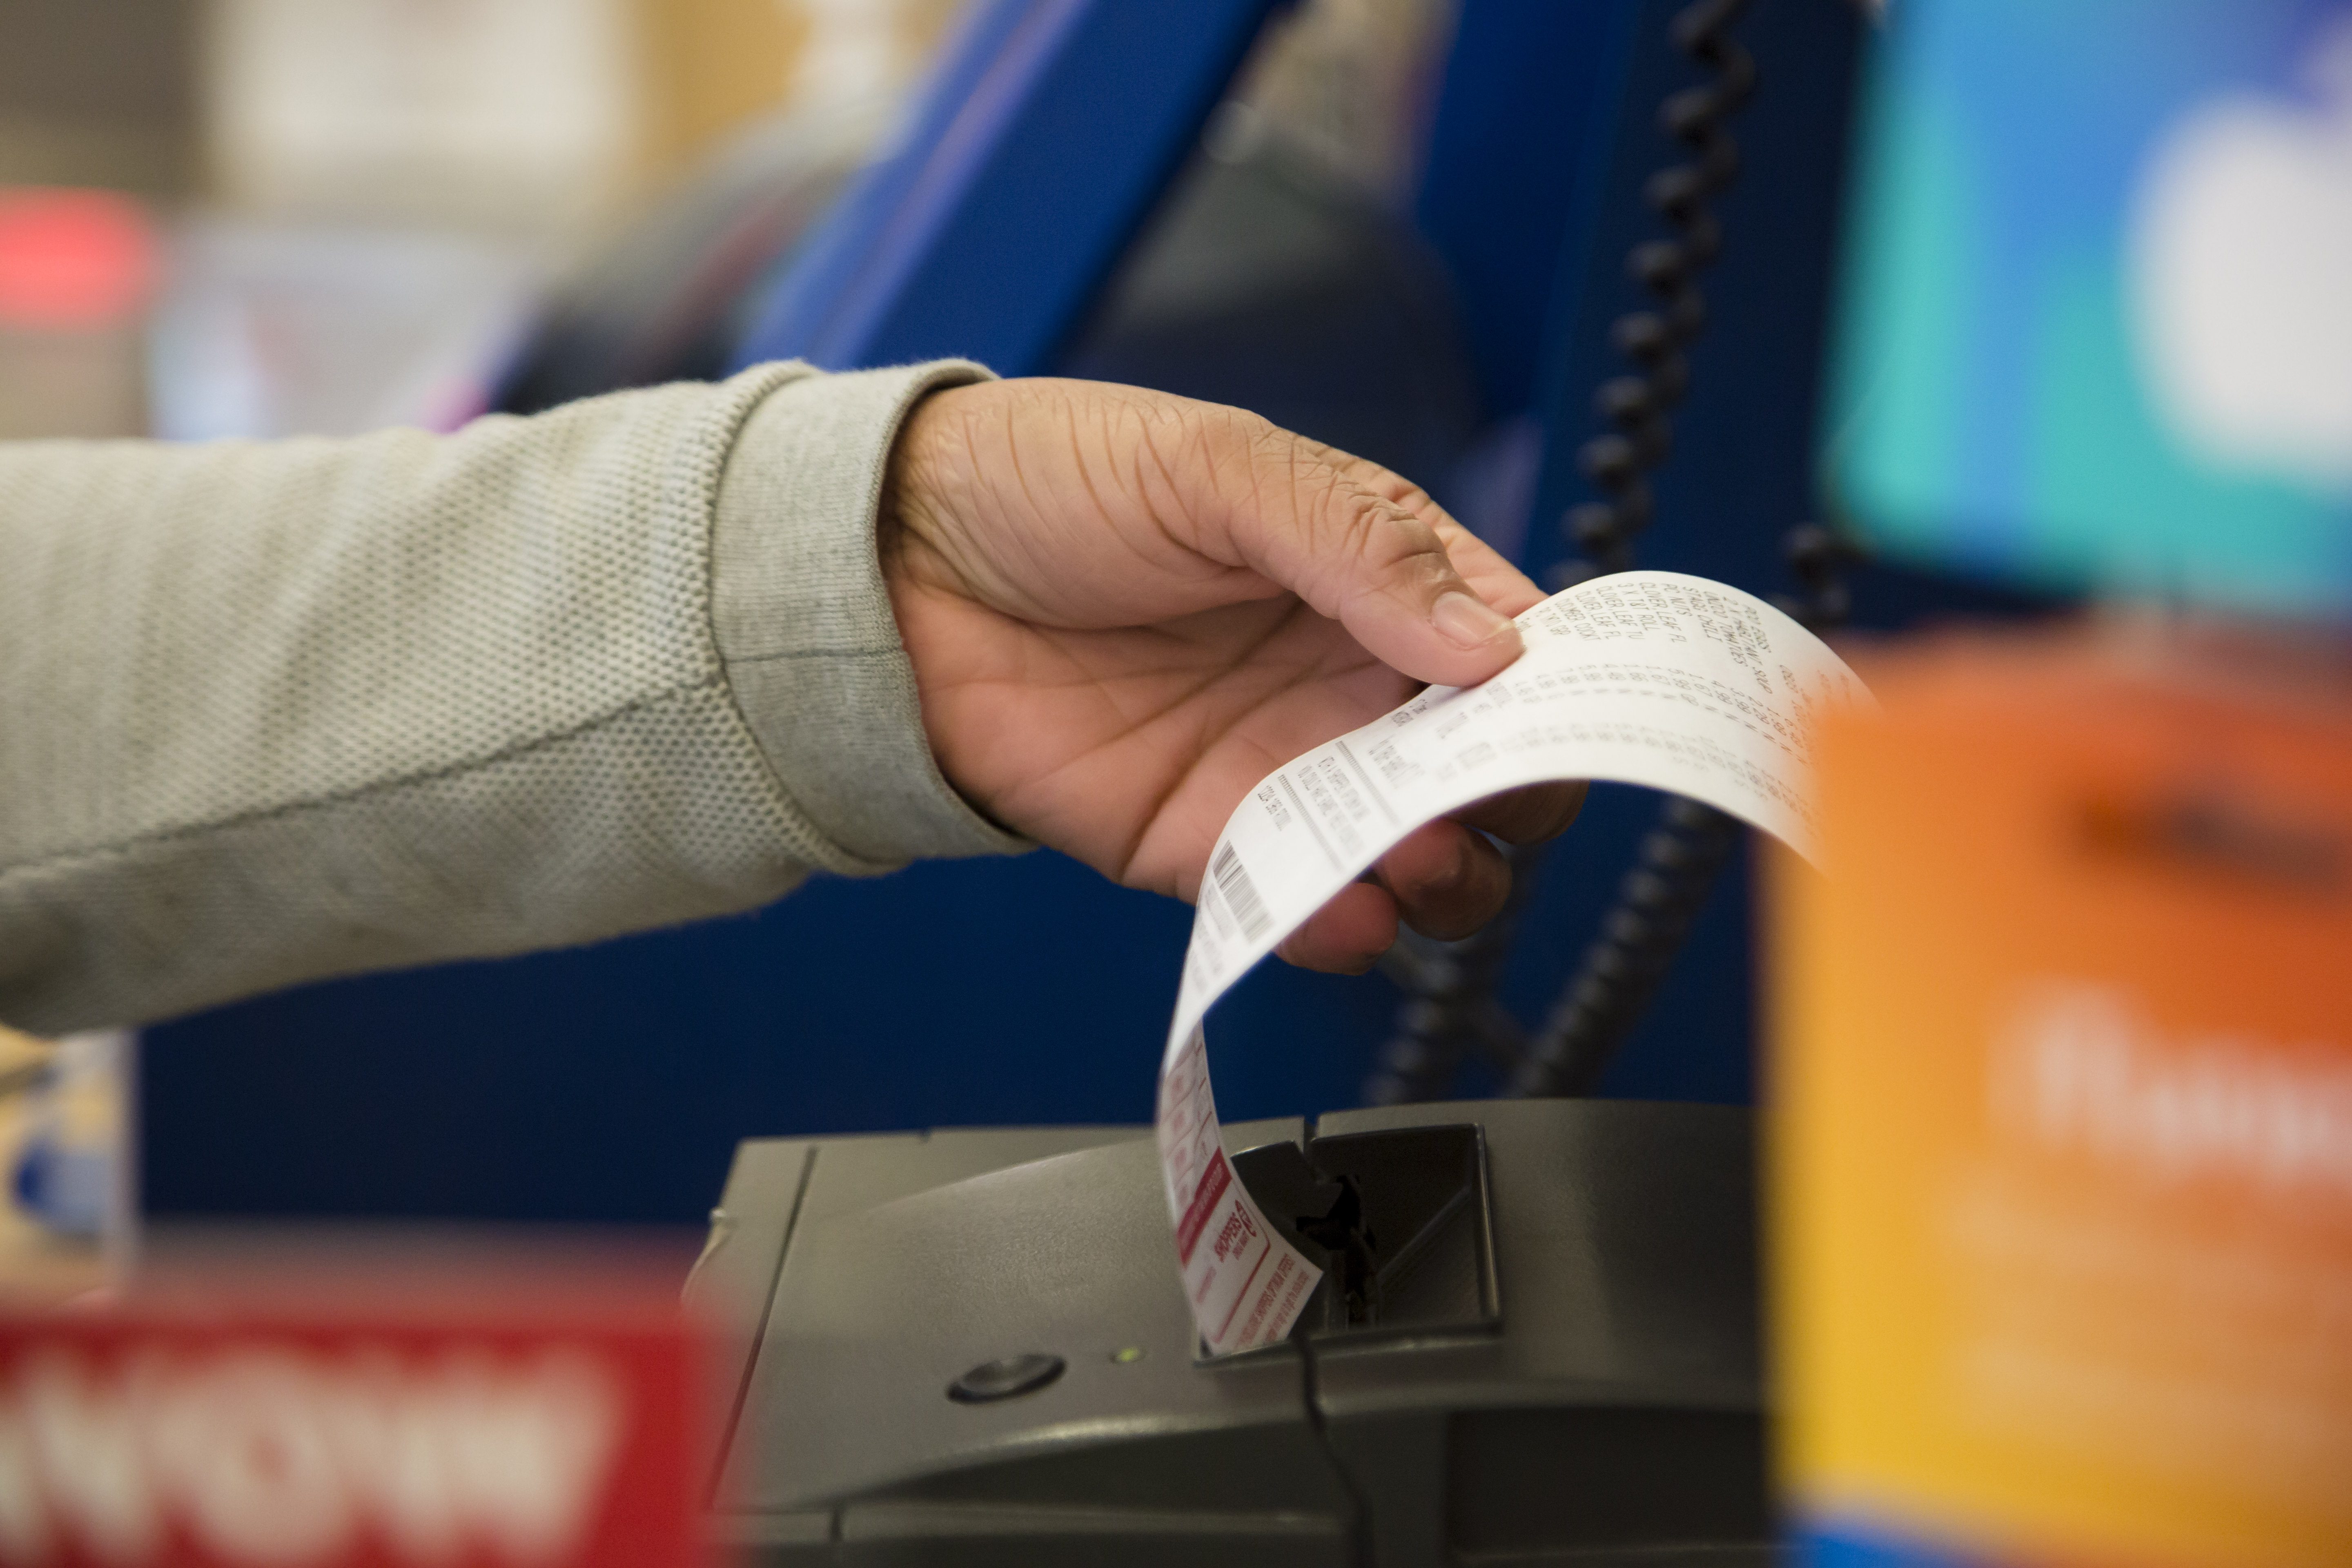 Loblaw cashier handling a receipt